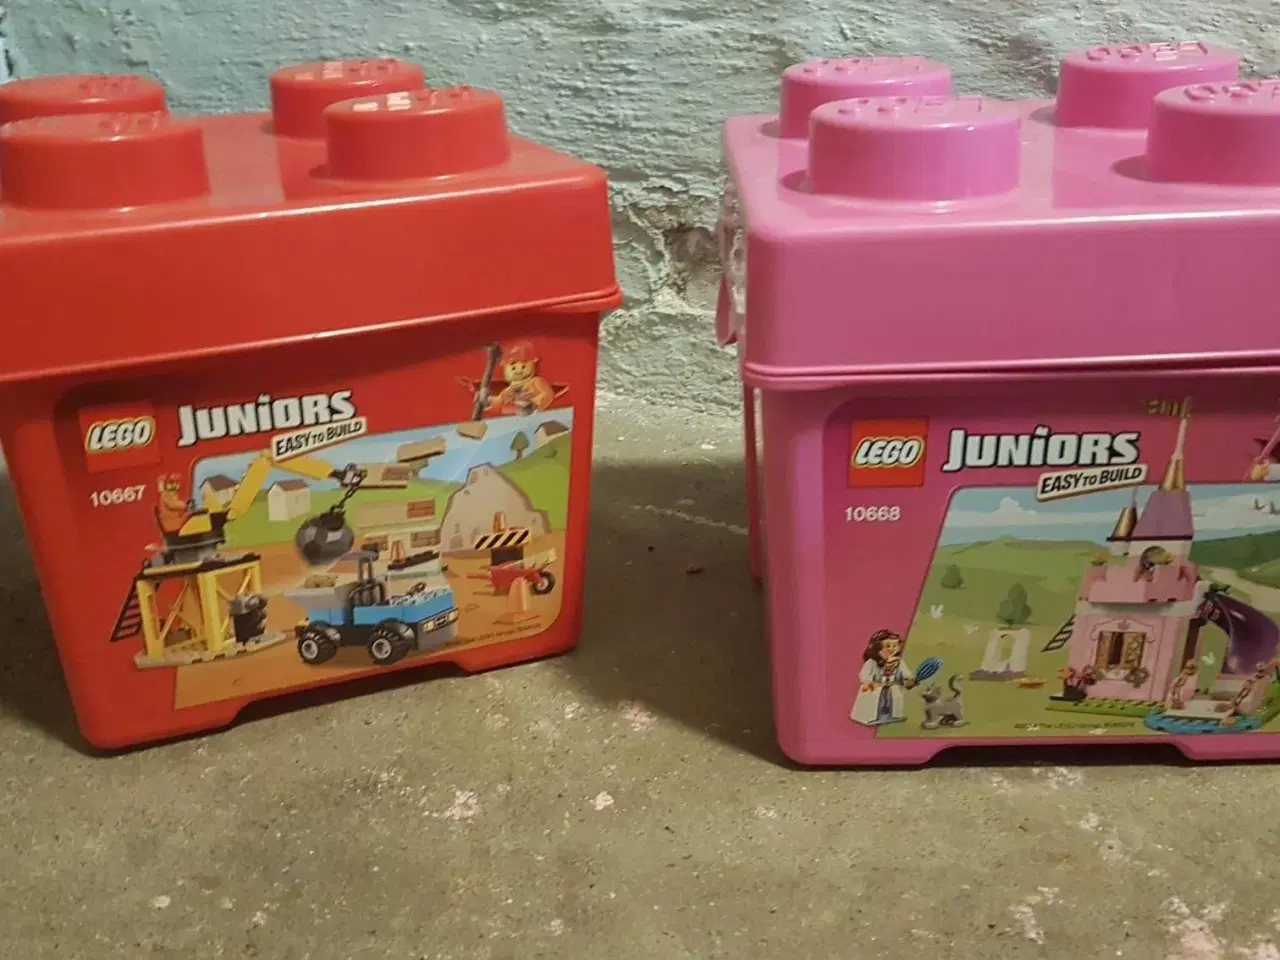 Billede 1 - Lego kasser til opbevaring